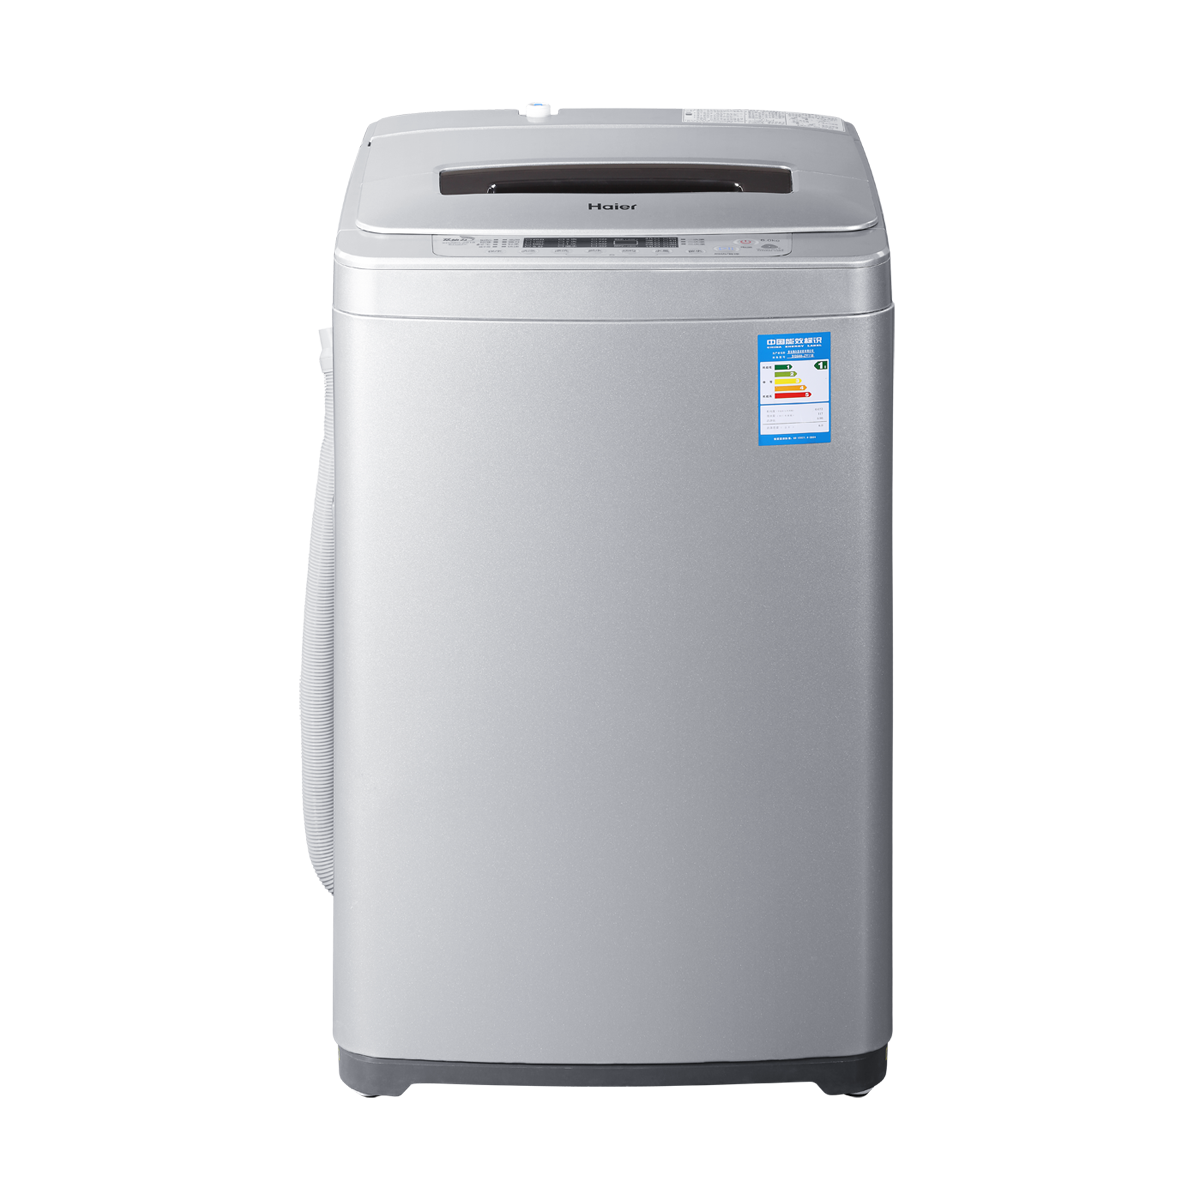 海尔Haier洗衣机 XQS60-Z918 说明书